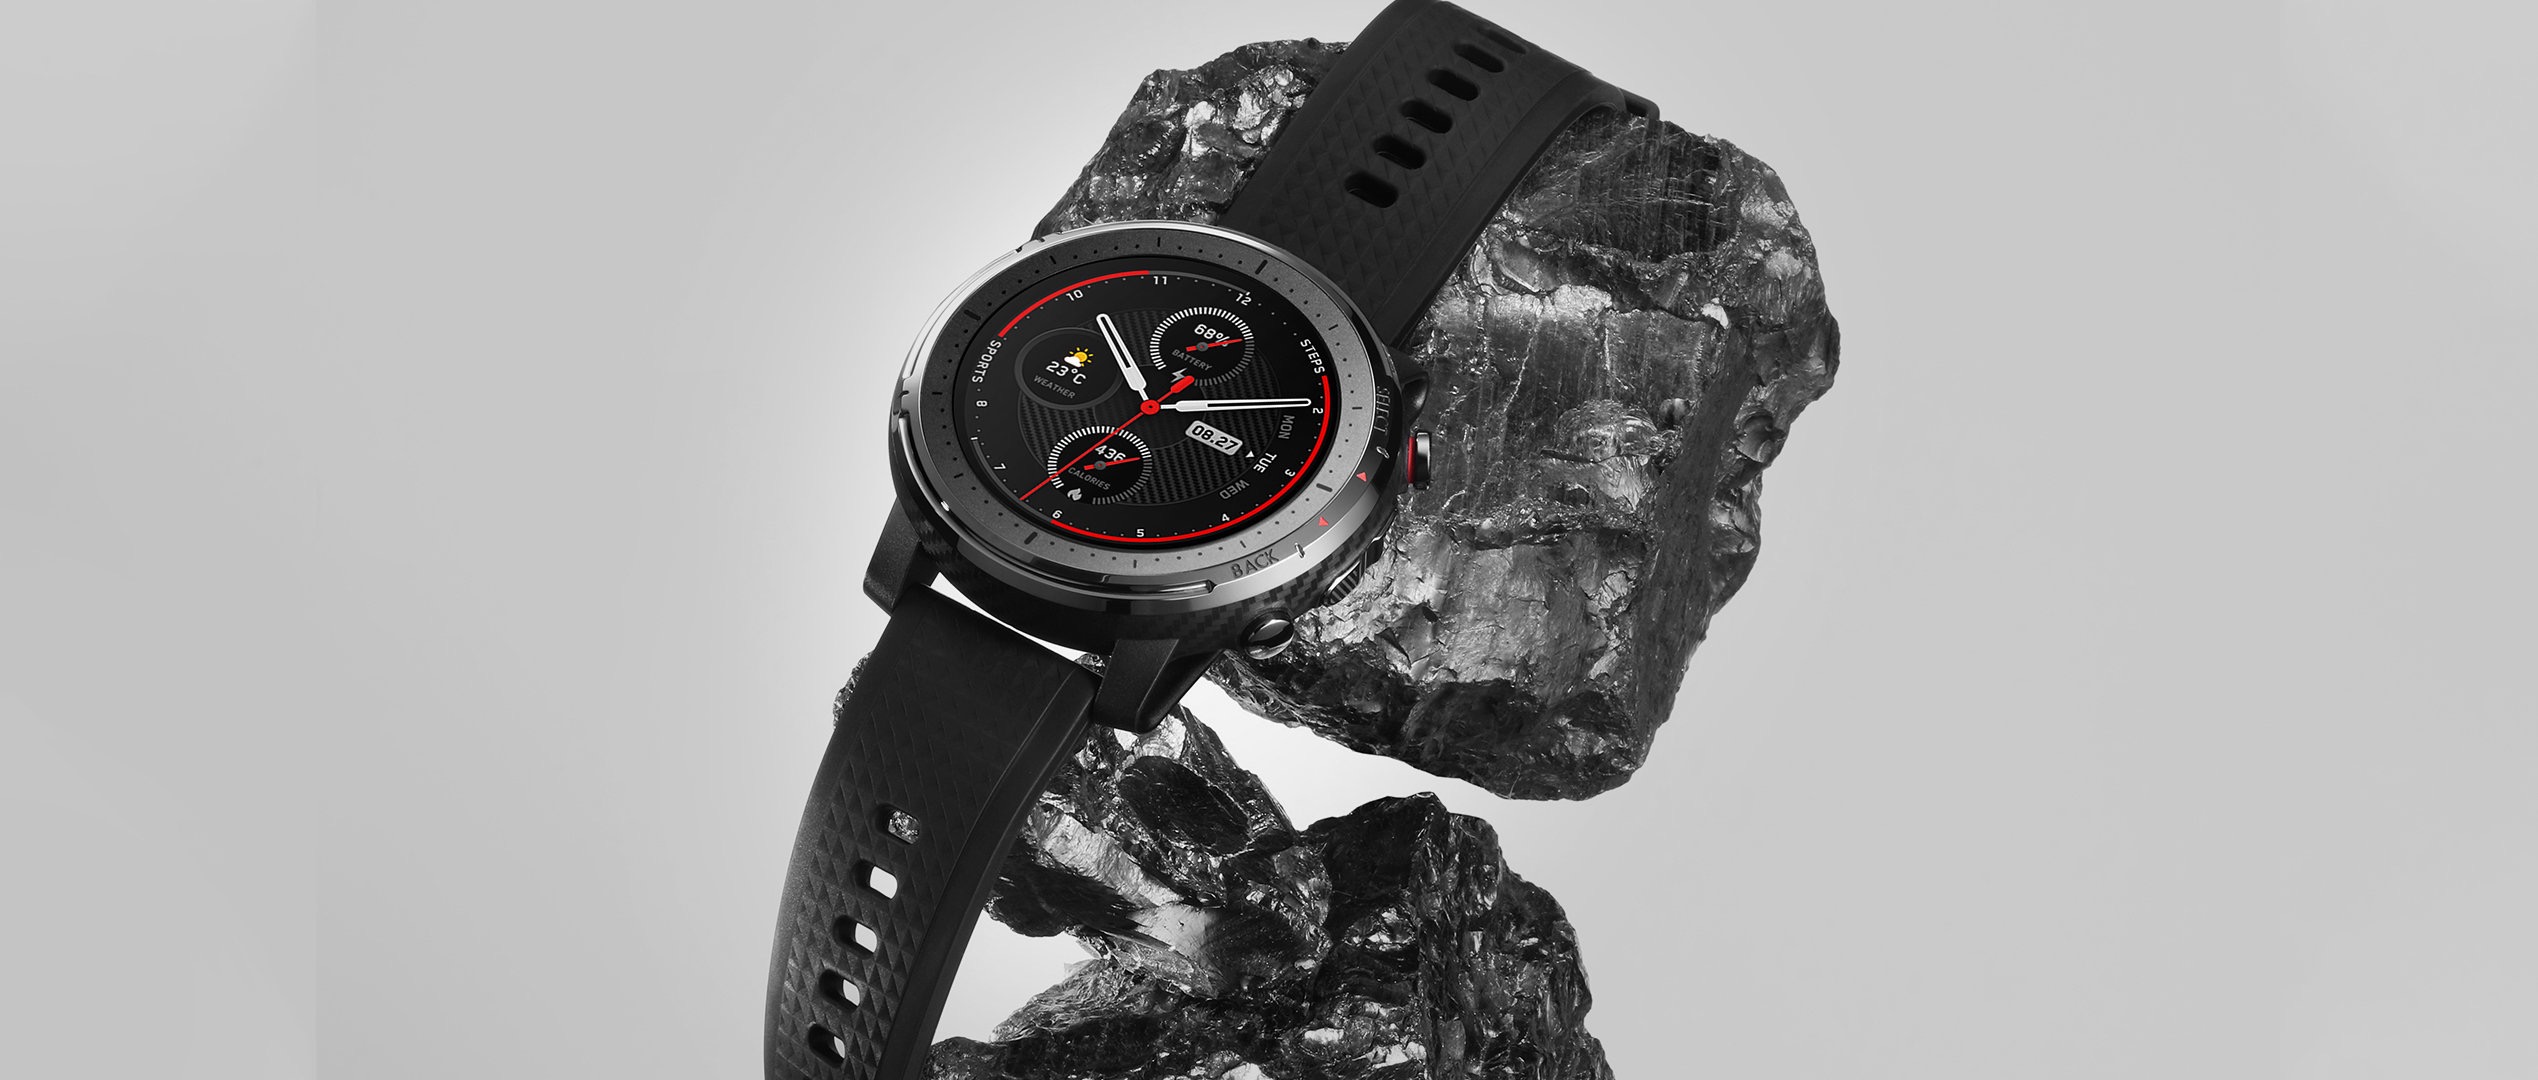 Jam tangan olahraga pintar Amazfit 3, karakteristik, harga, dan spesifikasi. Berita Xiaomi Terbaru